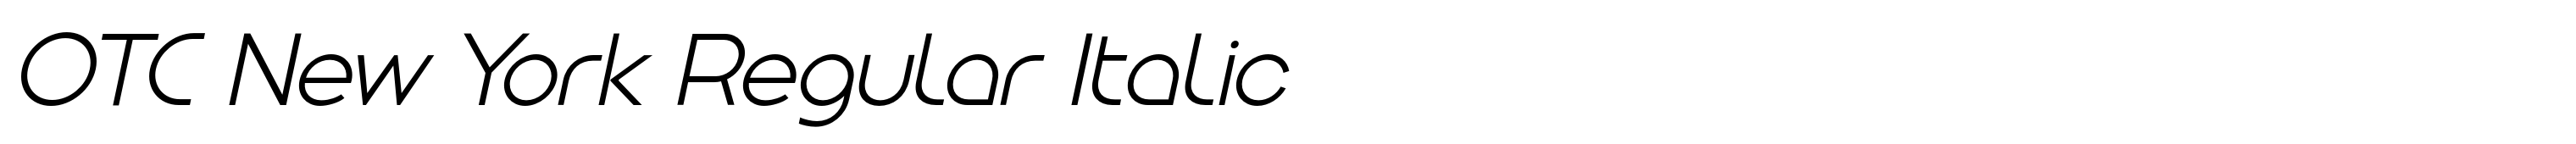 OTC New York Regular Italic